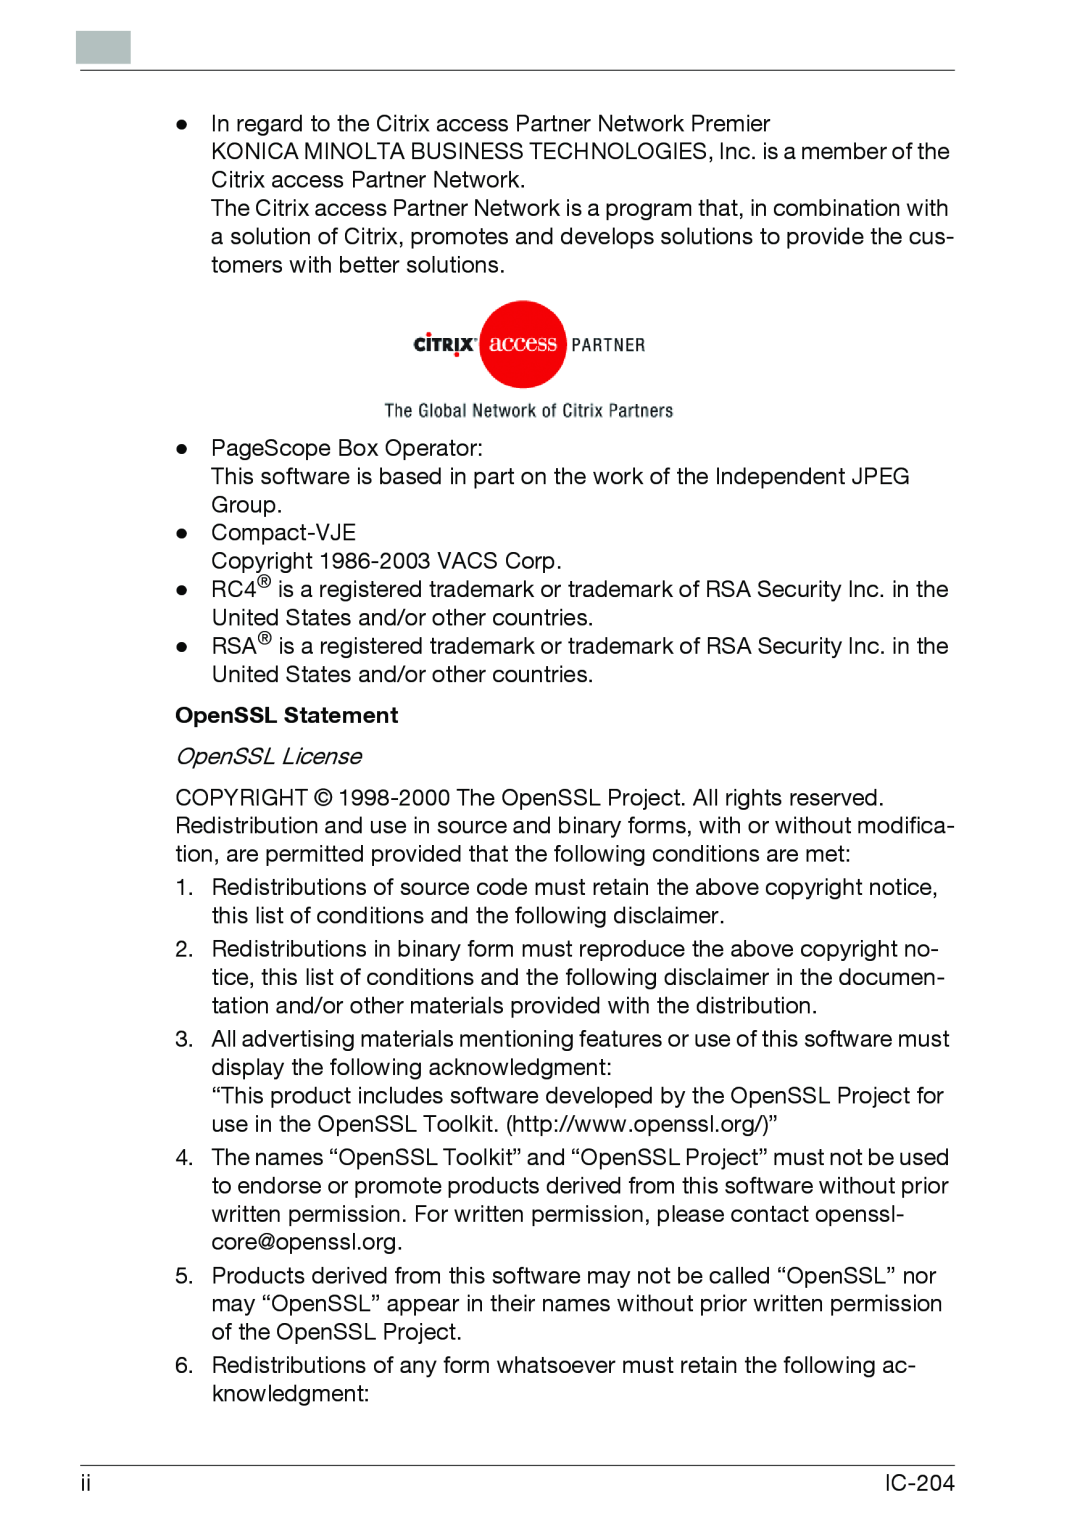 Konica Minolta IC-204 manual OpenSSL Statement 